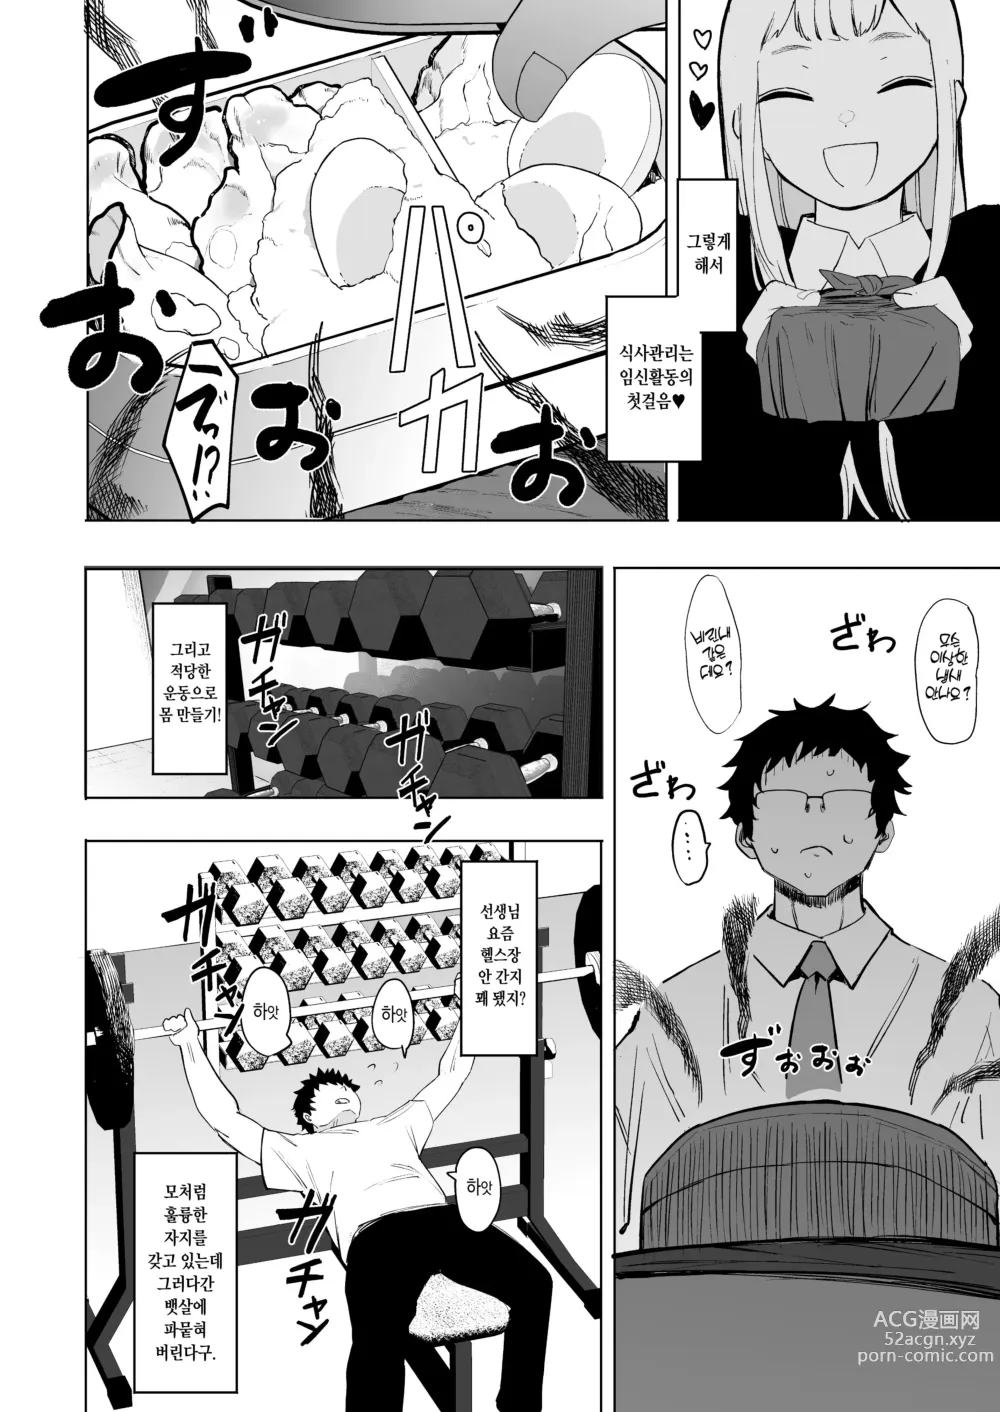 Page 13 of manga Eightman Sensei no Okage de Kanojo ga Dekimashita!